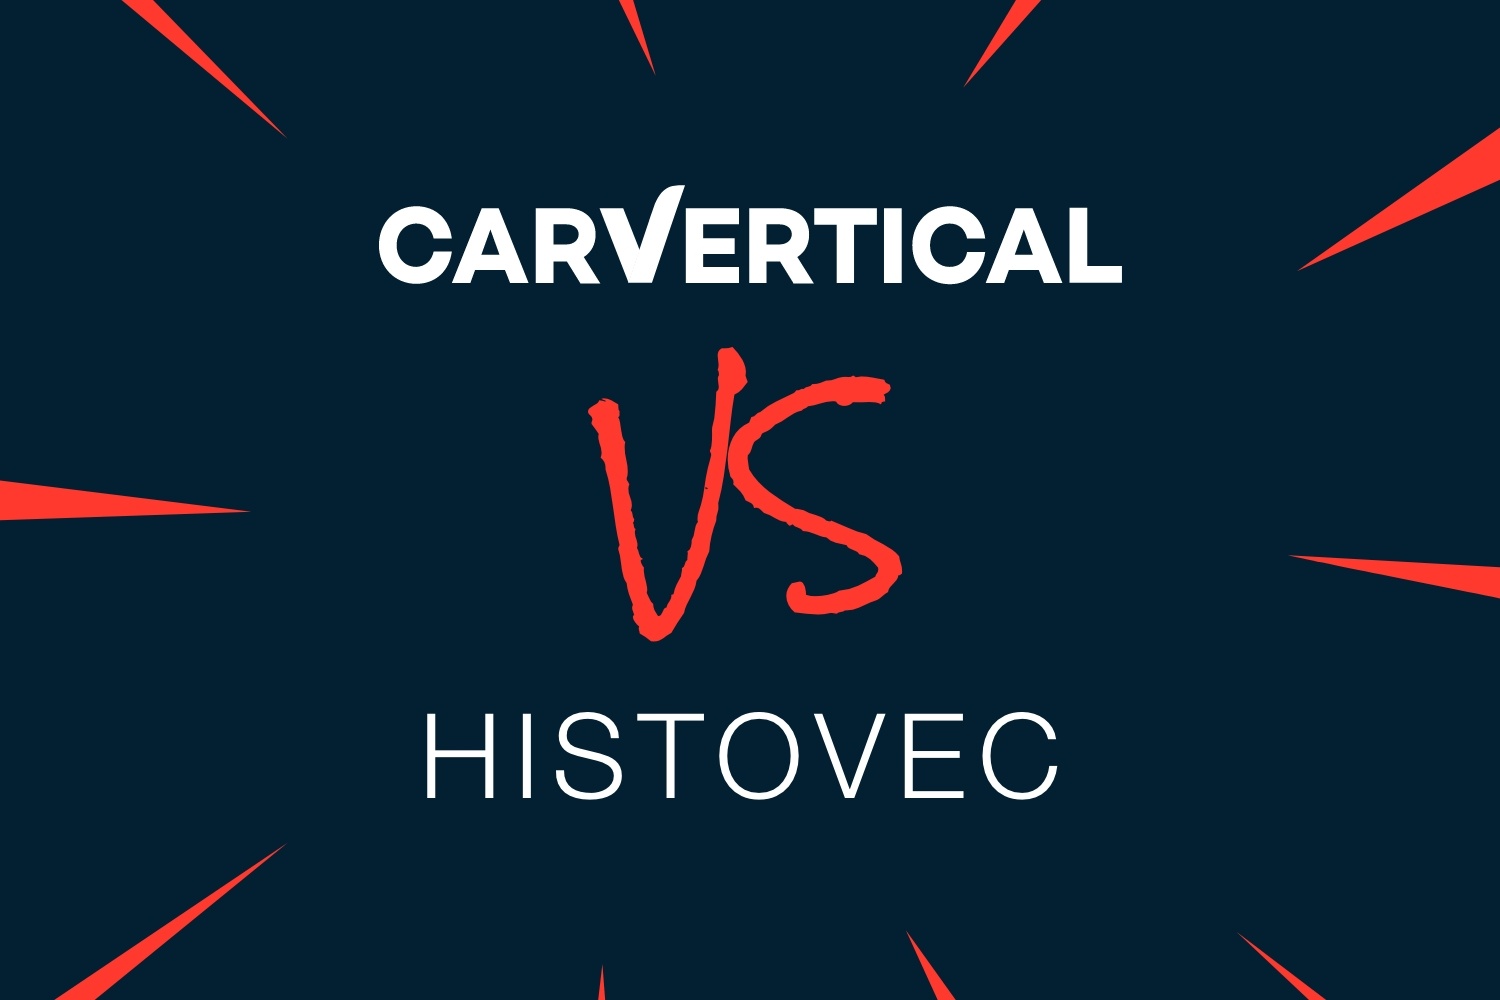 Pourquoi choisir carVertical plutôt qu’Histovec?